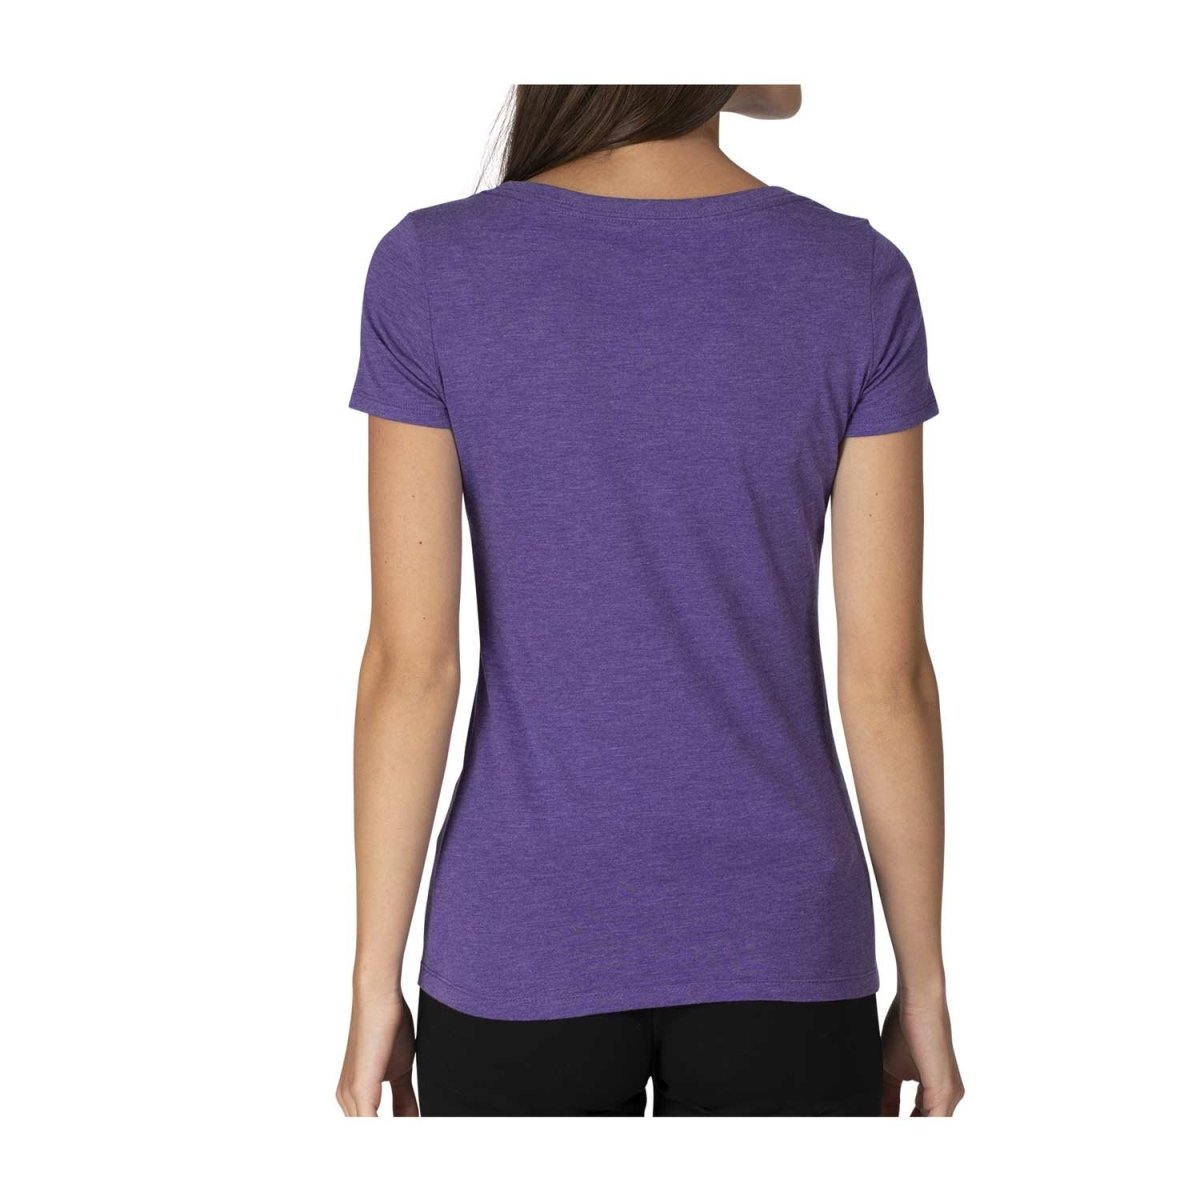 Eevee Evolutions Heather Purple Fitted Scoop Neck T-Shirt - Women ...